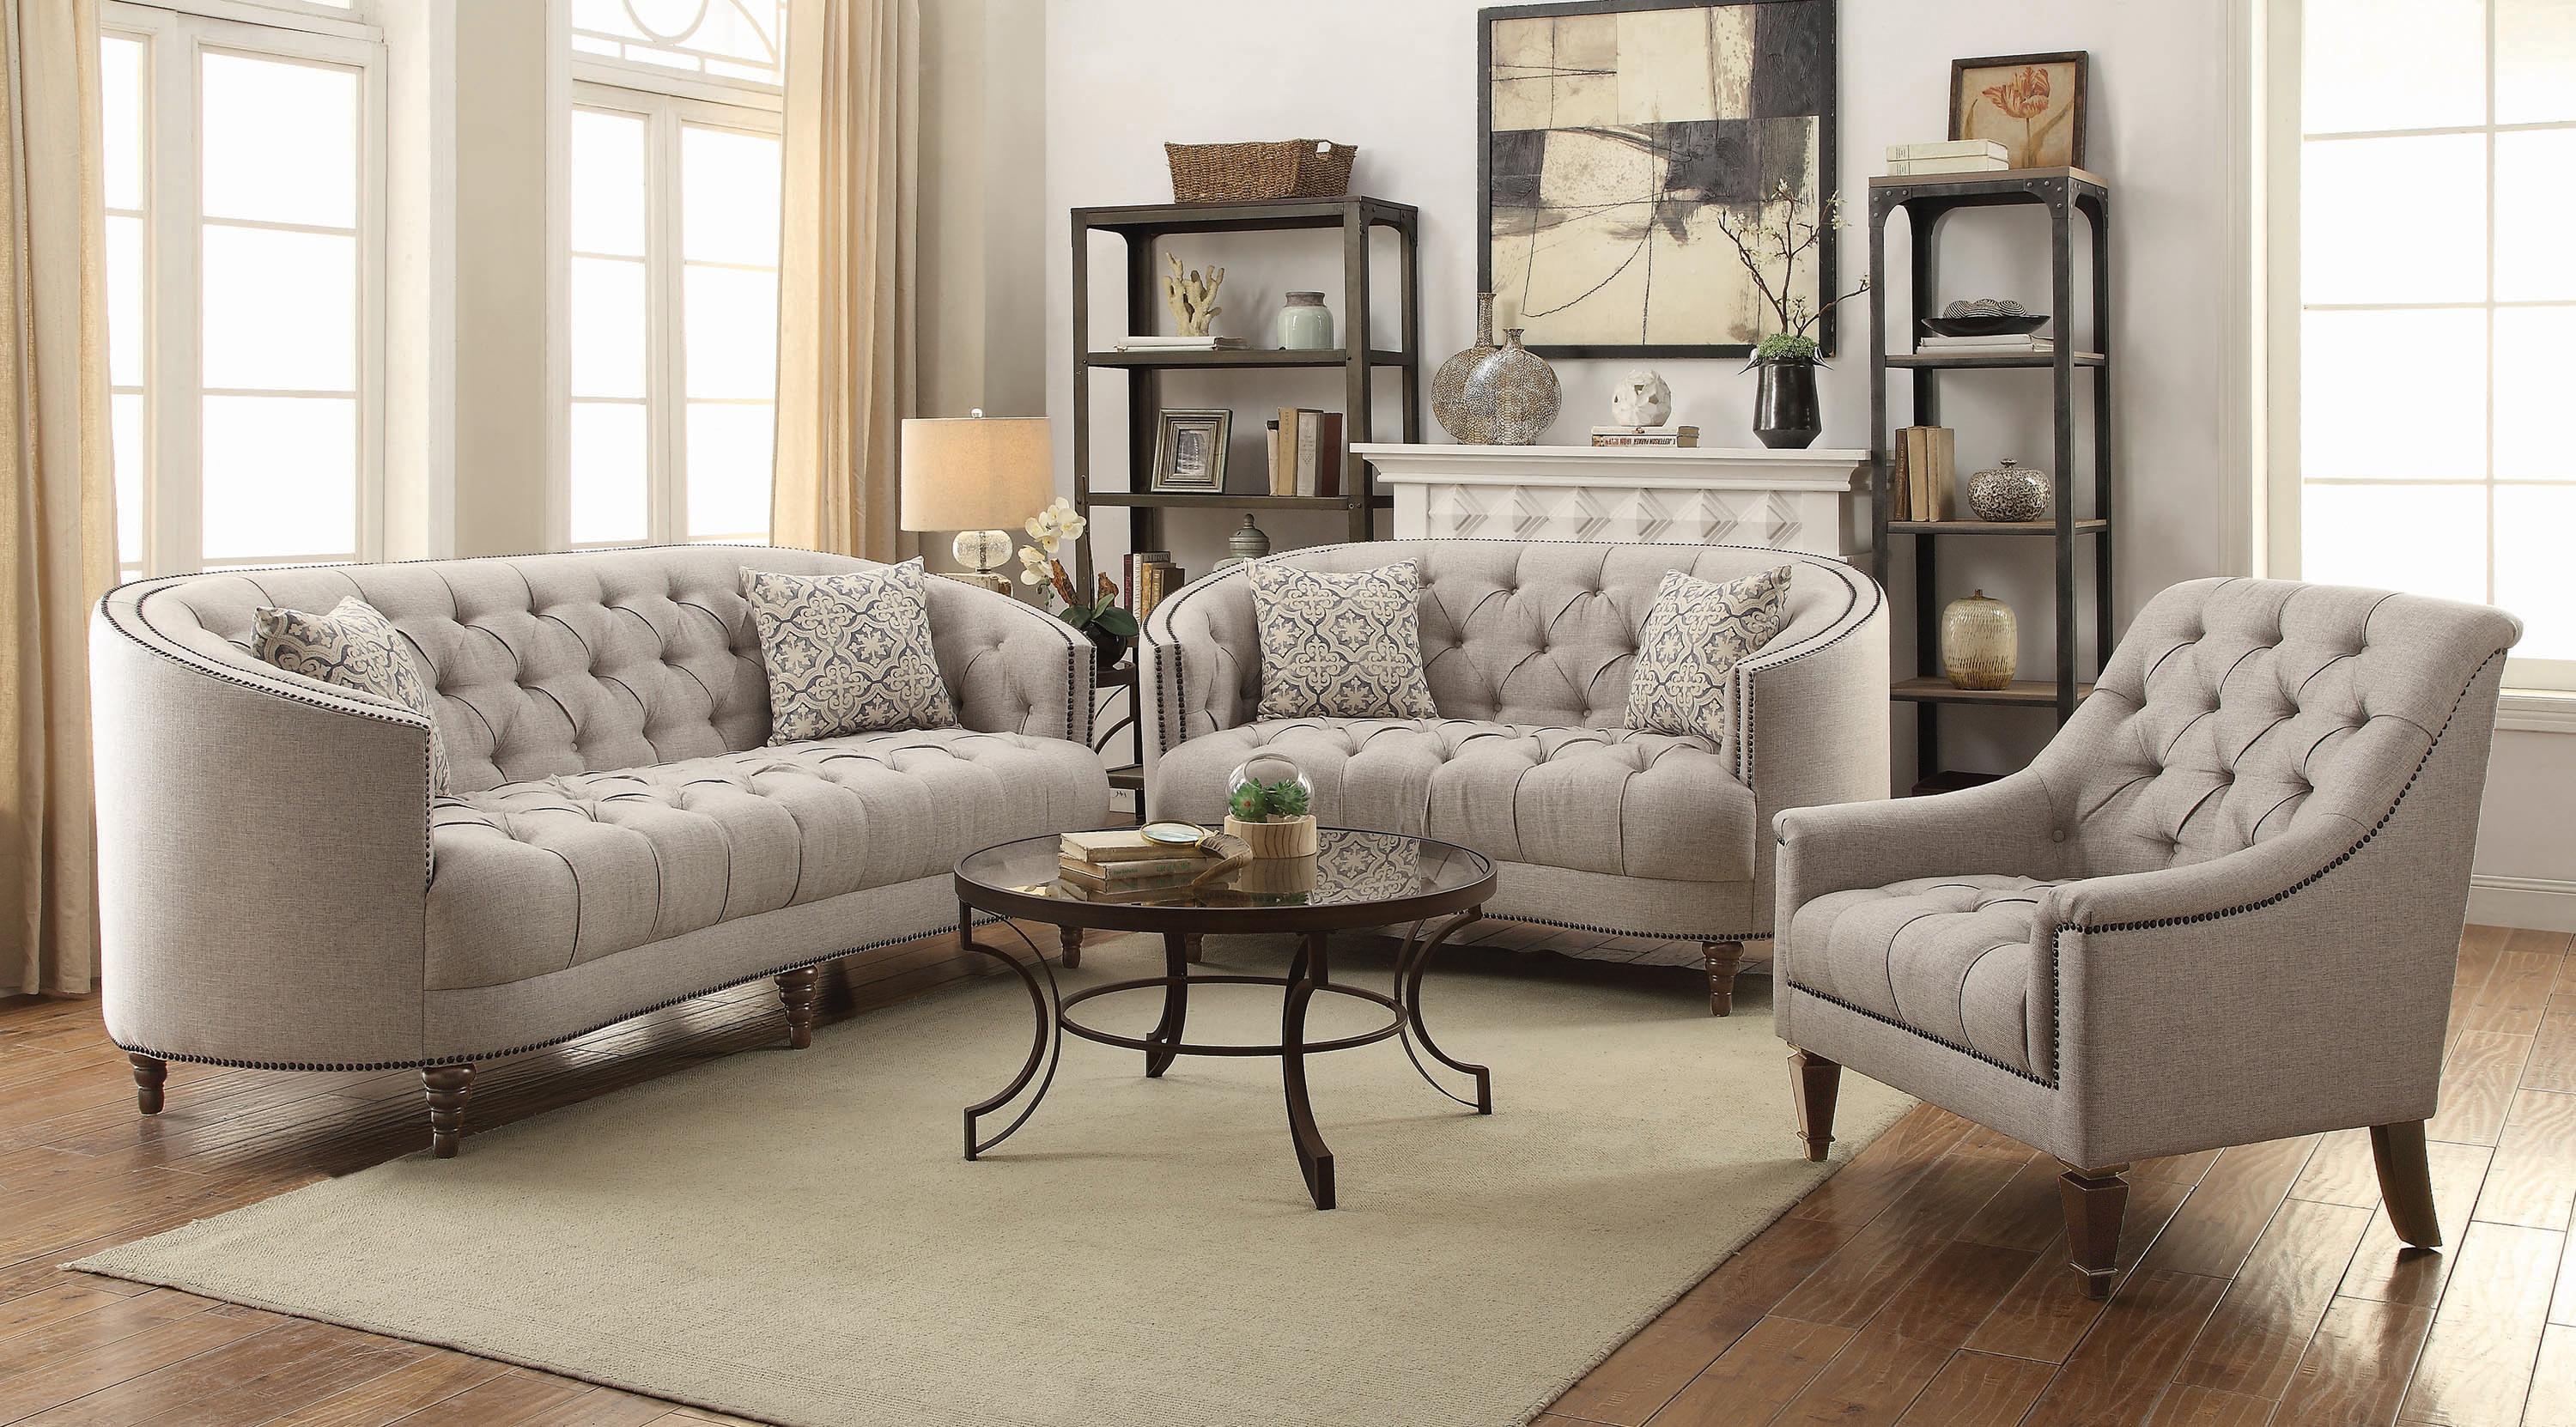 Classic Living Room Set 505641-S3 Avonlea 505641-S3 in Gray 